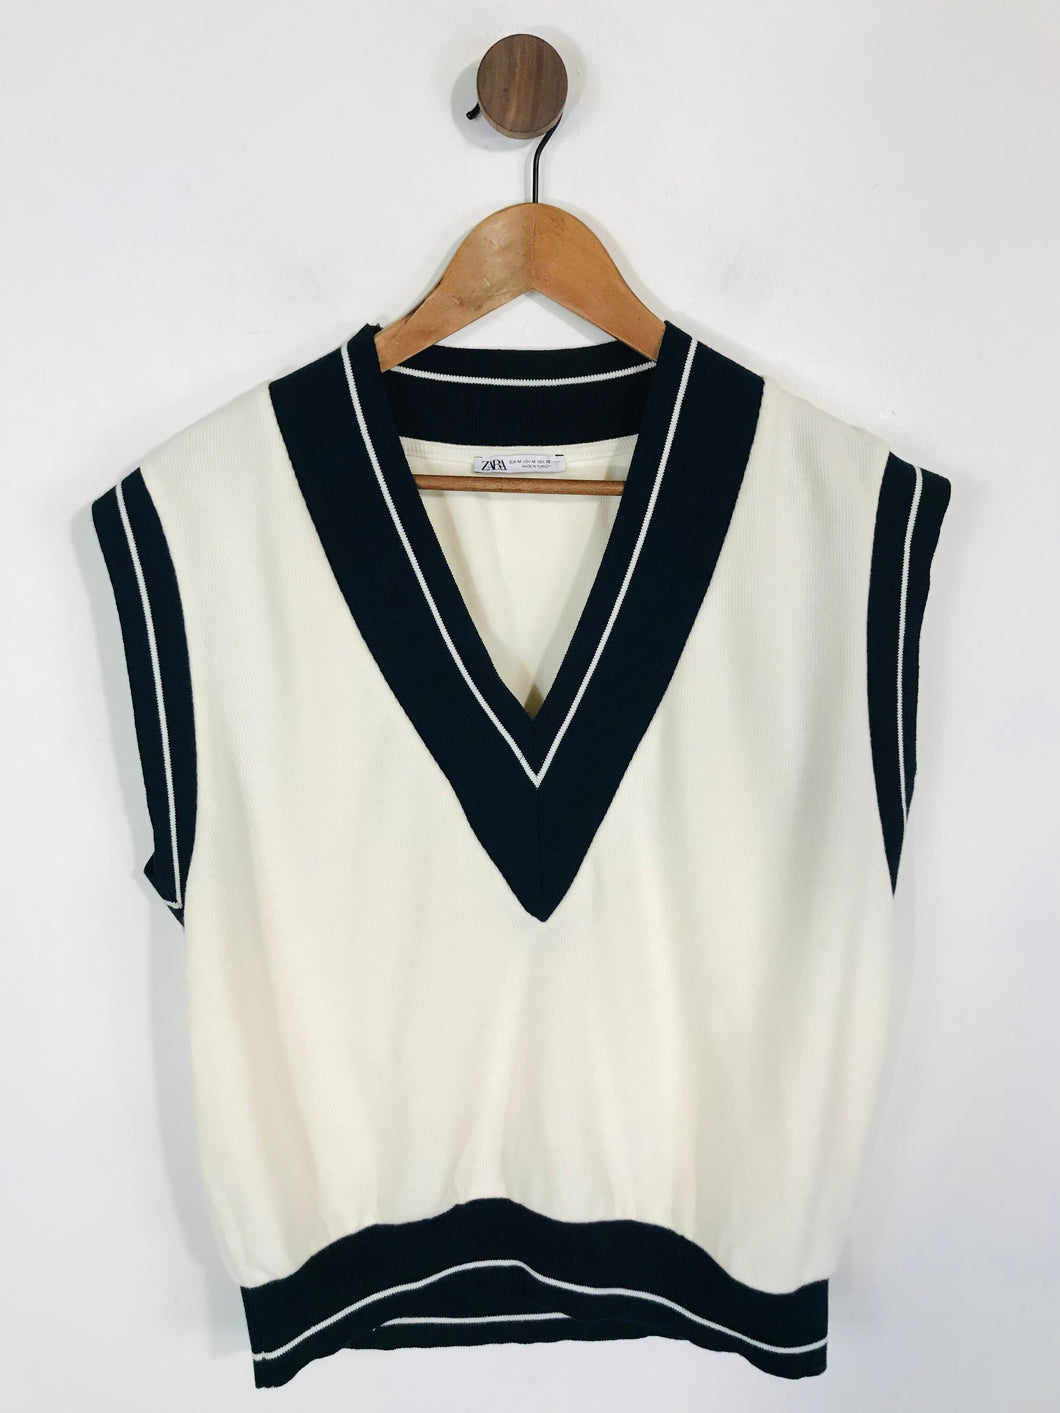 Zara Women's V-Neck Vest | M UK10-12 | White